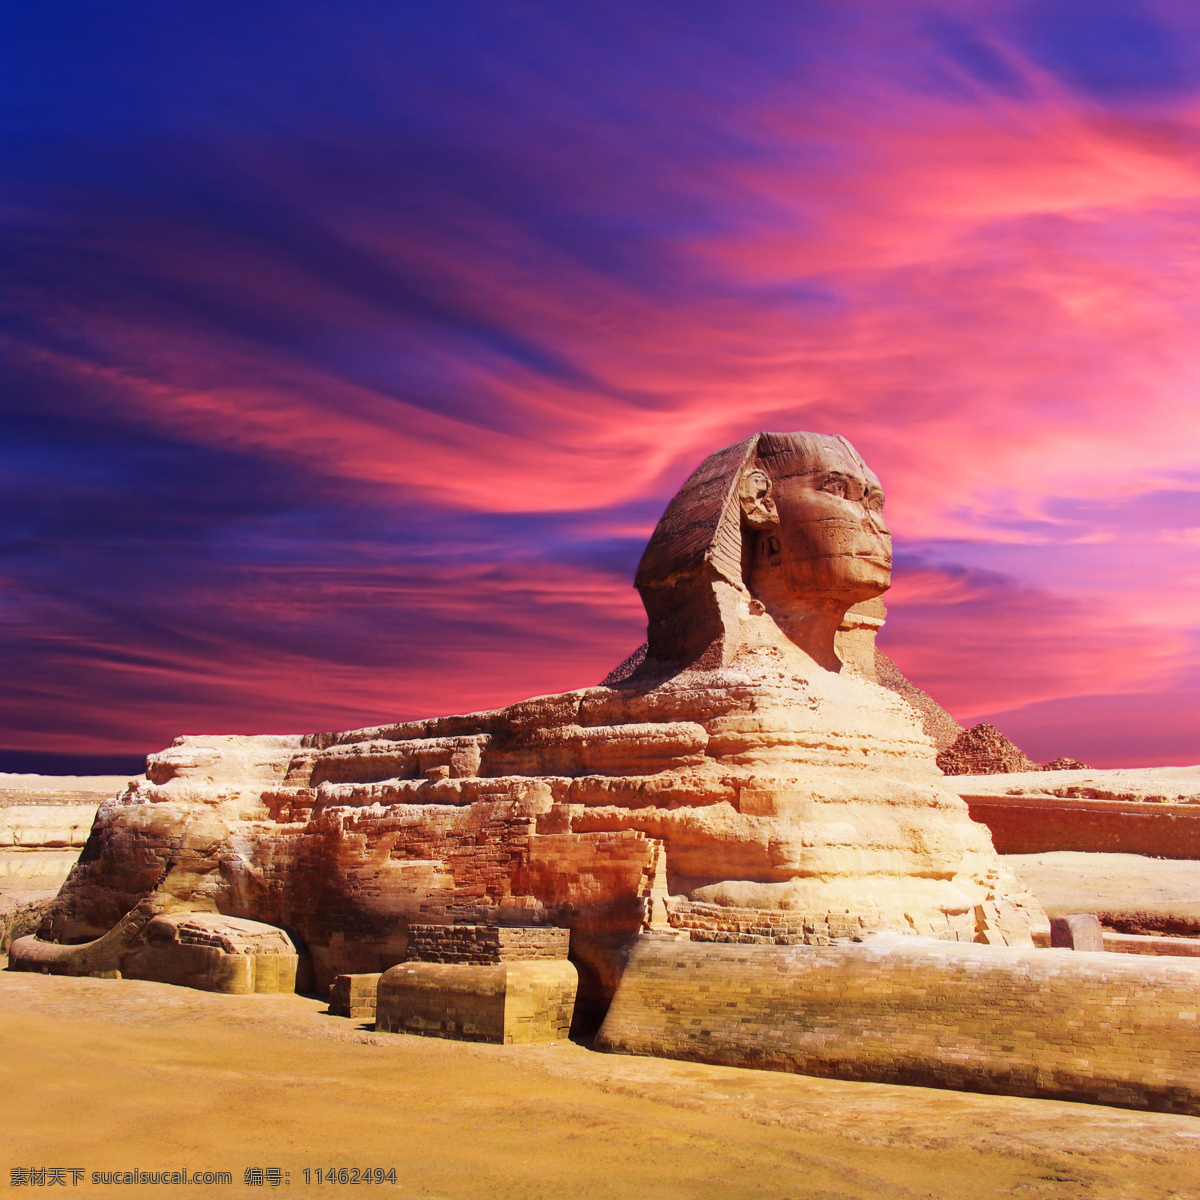 埃及 金字塔 狮身人面像 宏伟 壮观 非洲 名胜古迹 奇迹 石雕建筑 建筑景观 世界建筑景观 天空 云彩 国外旅游 旅游摄影